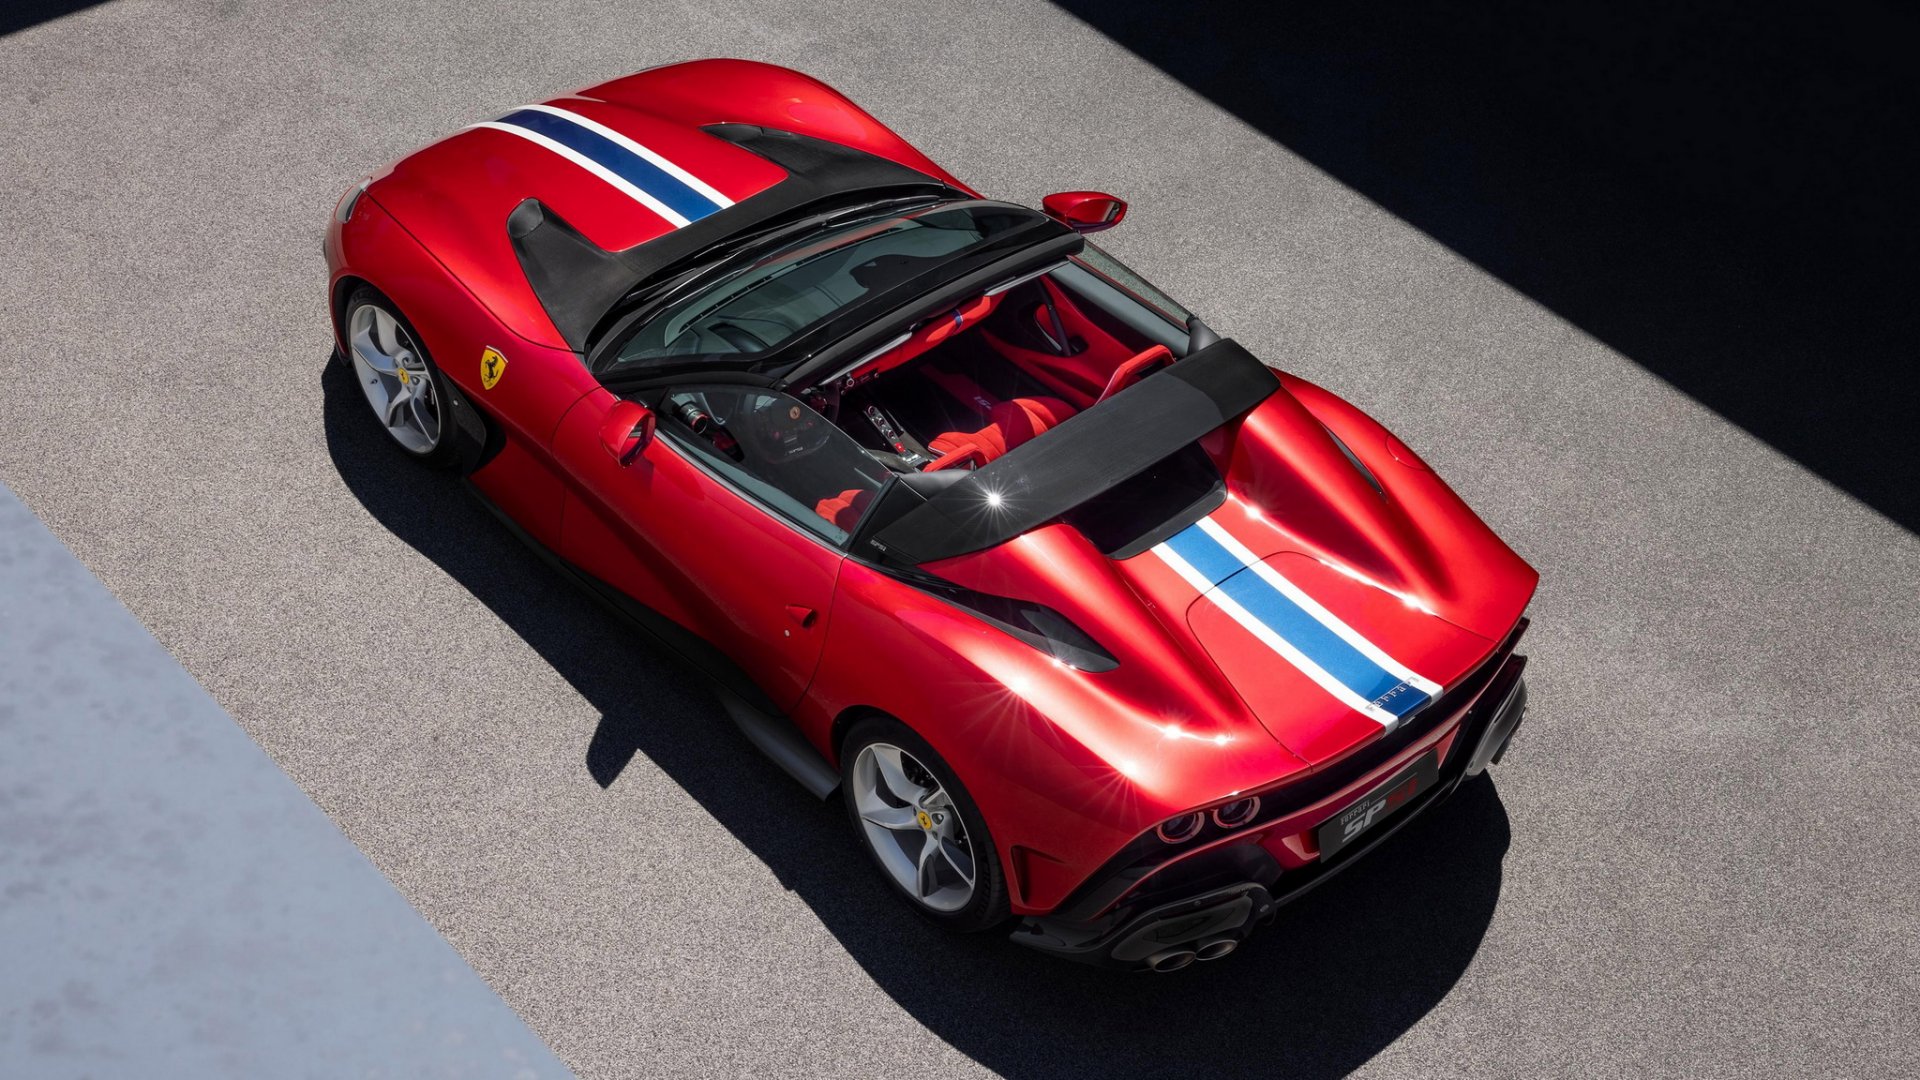 ใหม่!! Ferrari SP51 เปลือยหลังคา สร้างเพียงหนึ่งเดียว!!